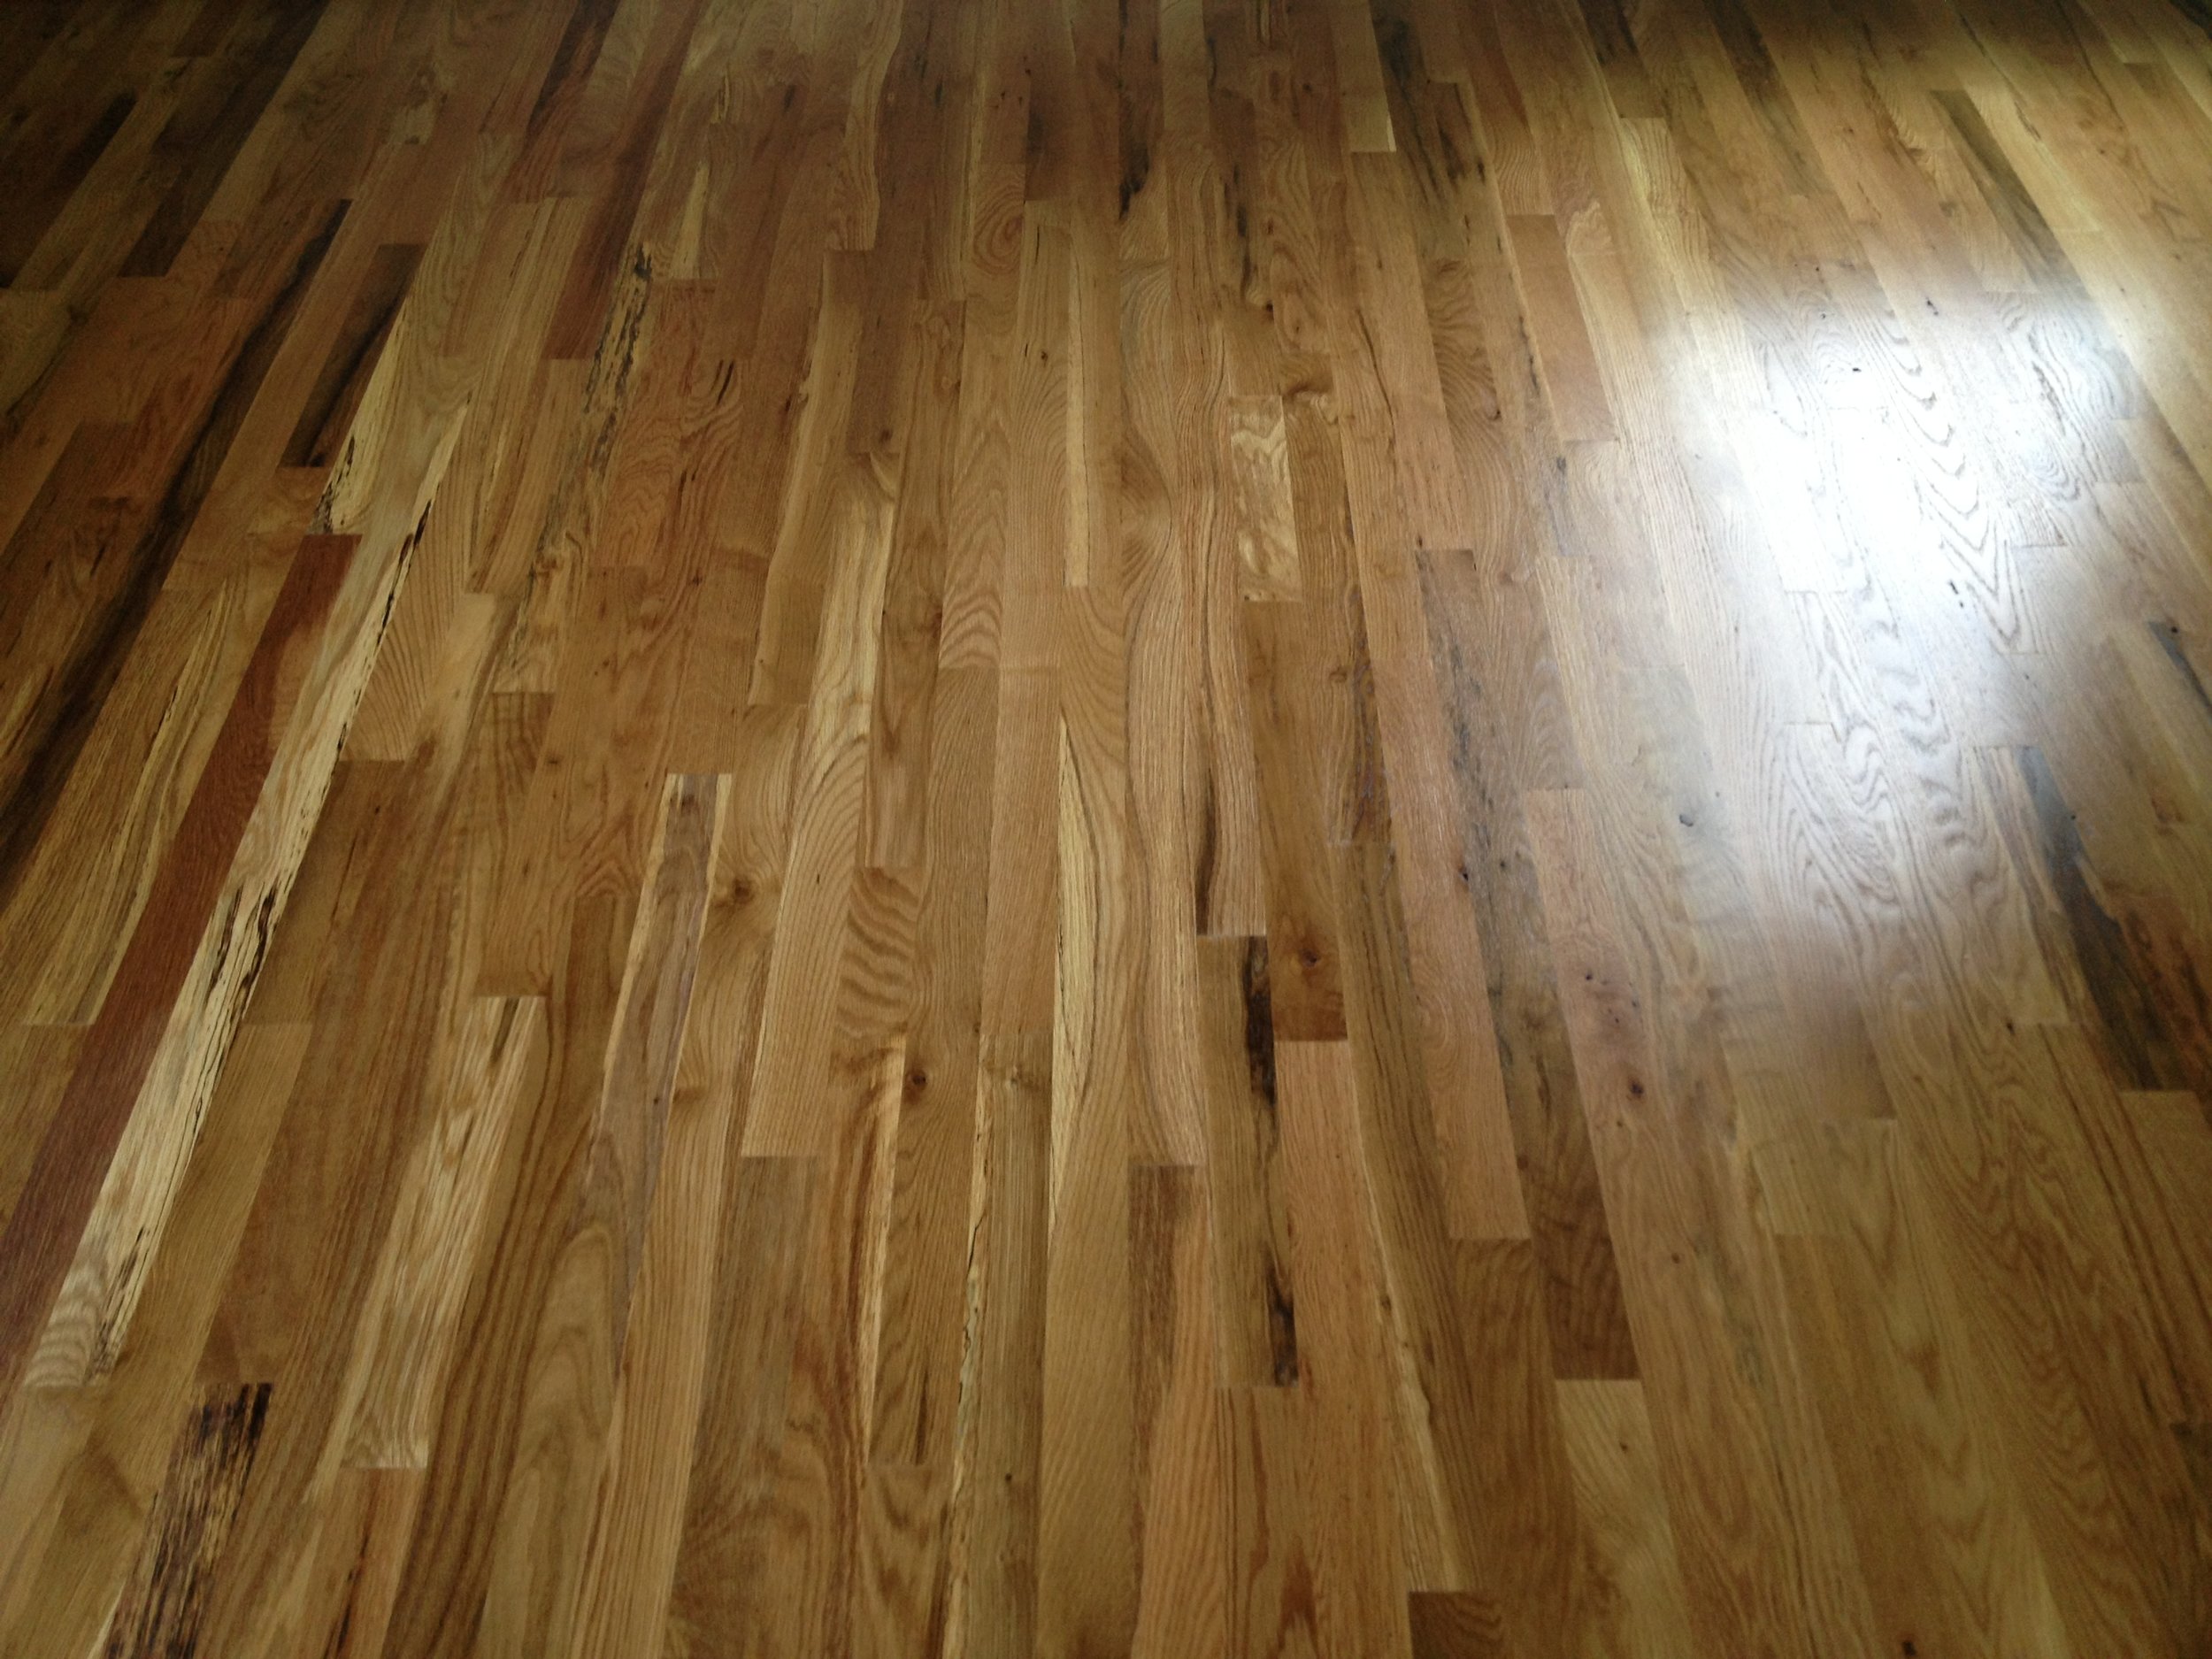 Red Oak Vs White Hardwood Flooring, Red Oak Hardwood Floor Colors